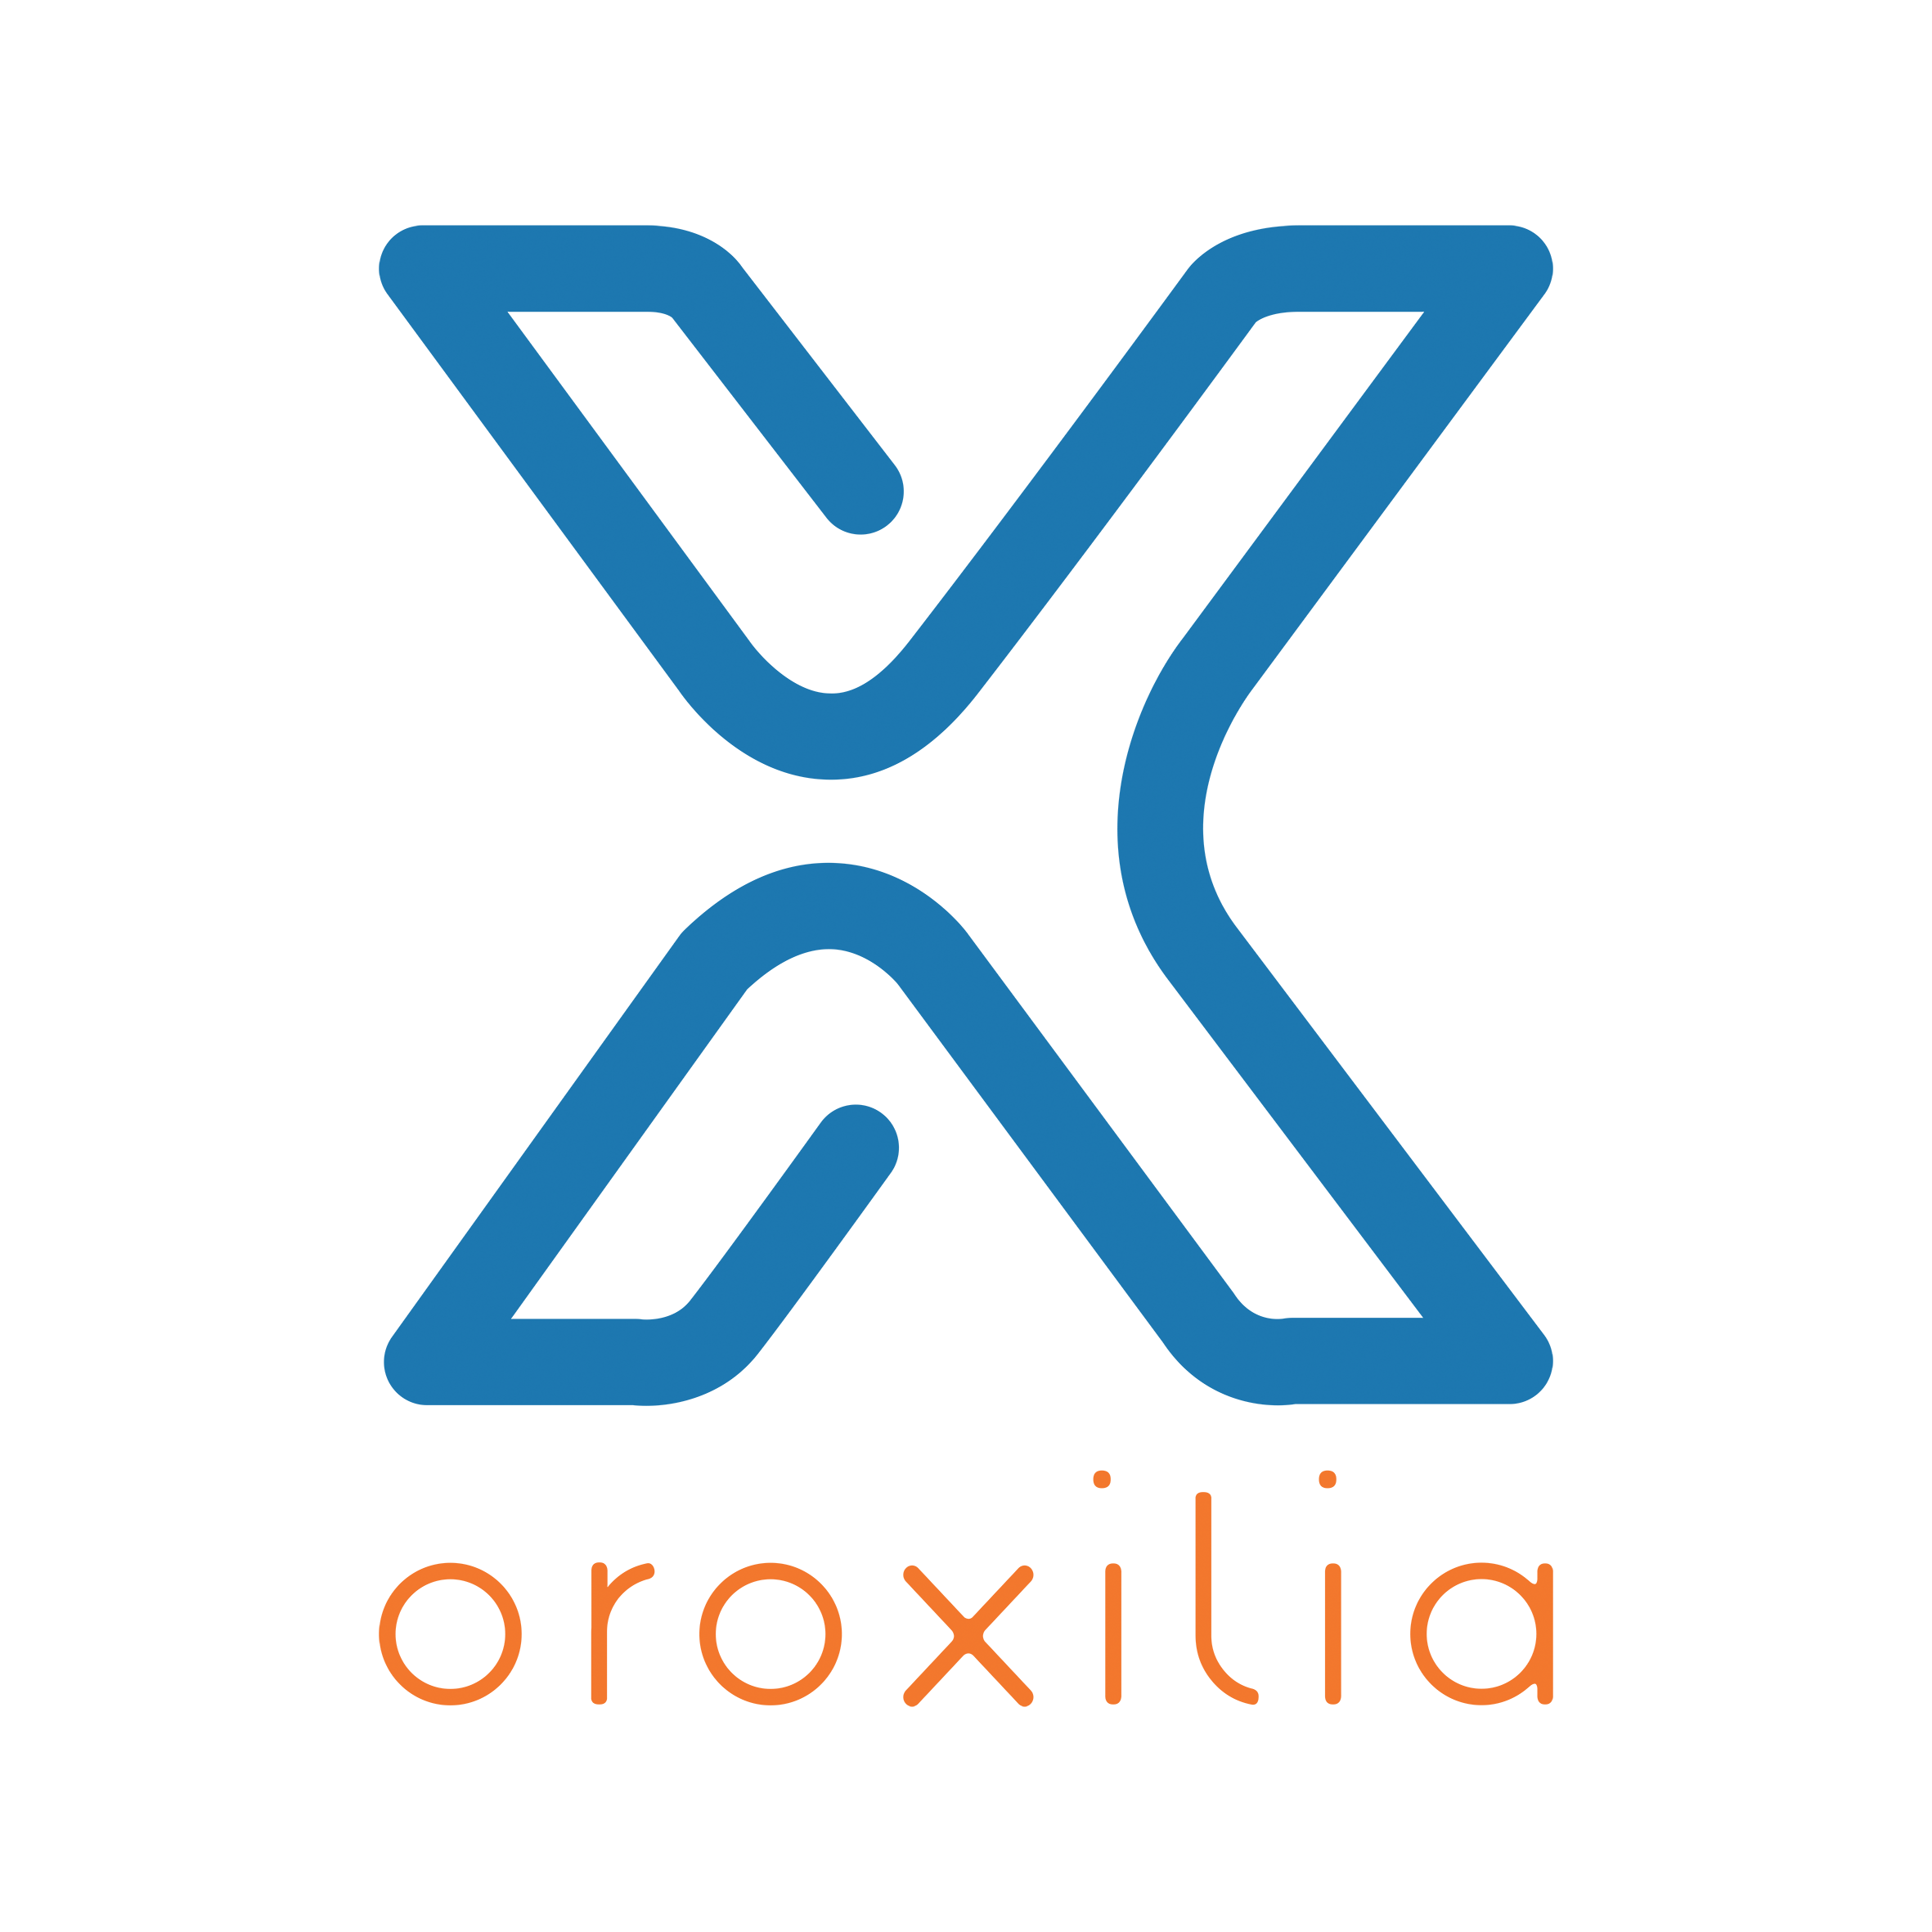 Oroxilia